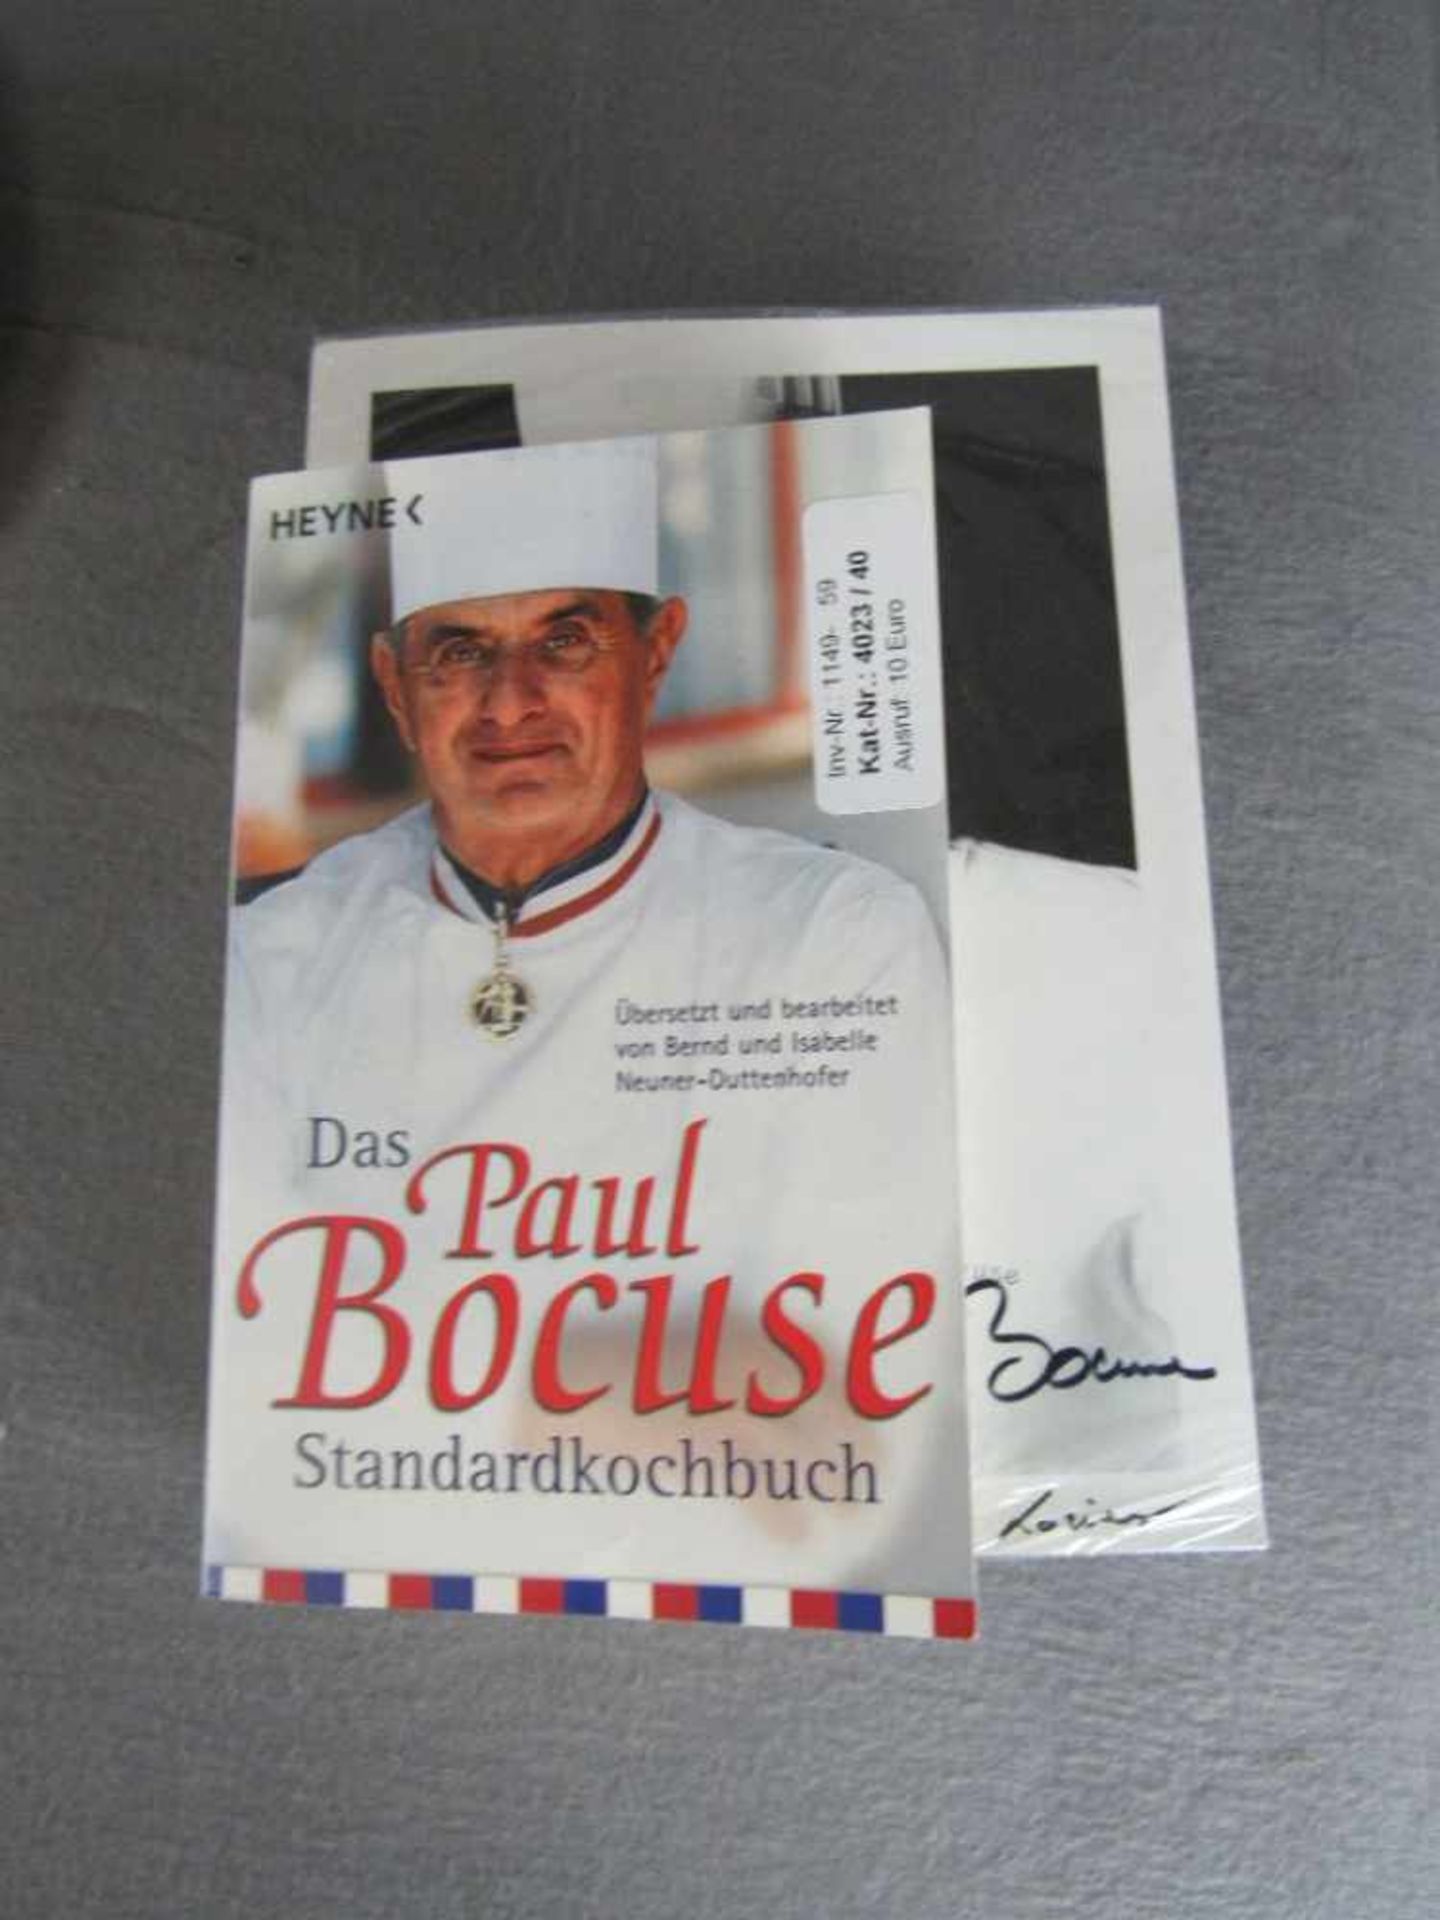 Autogramm und Buch von einem Starkoch Paul Bocuse